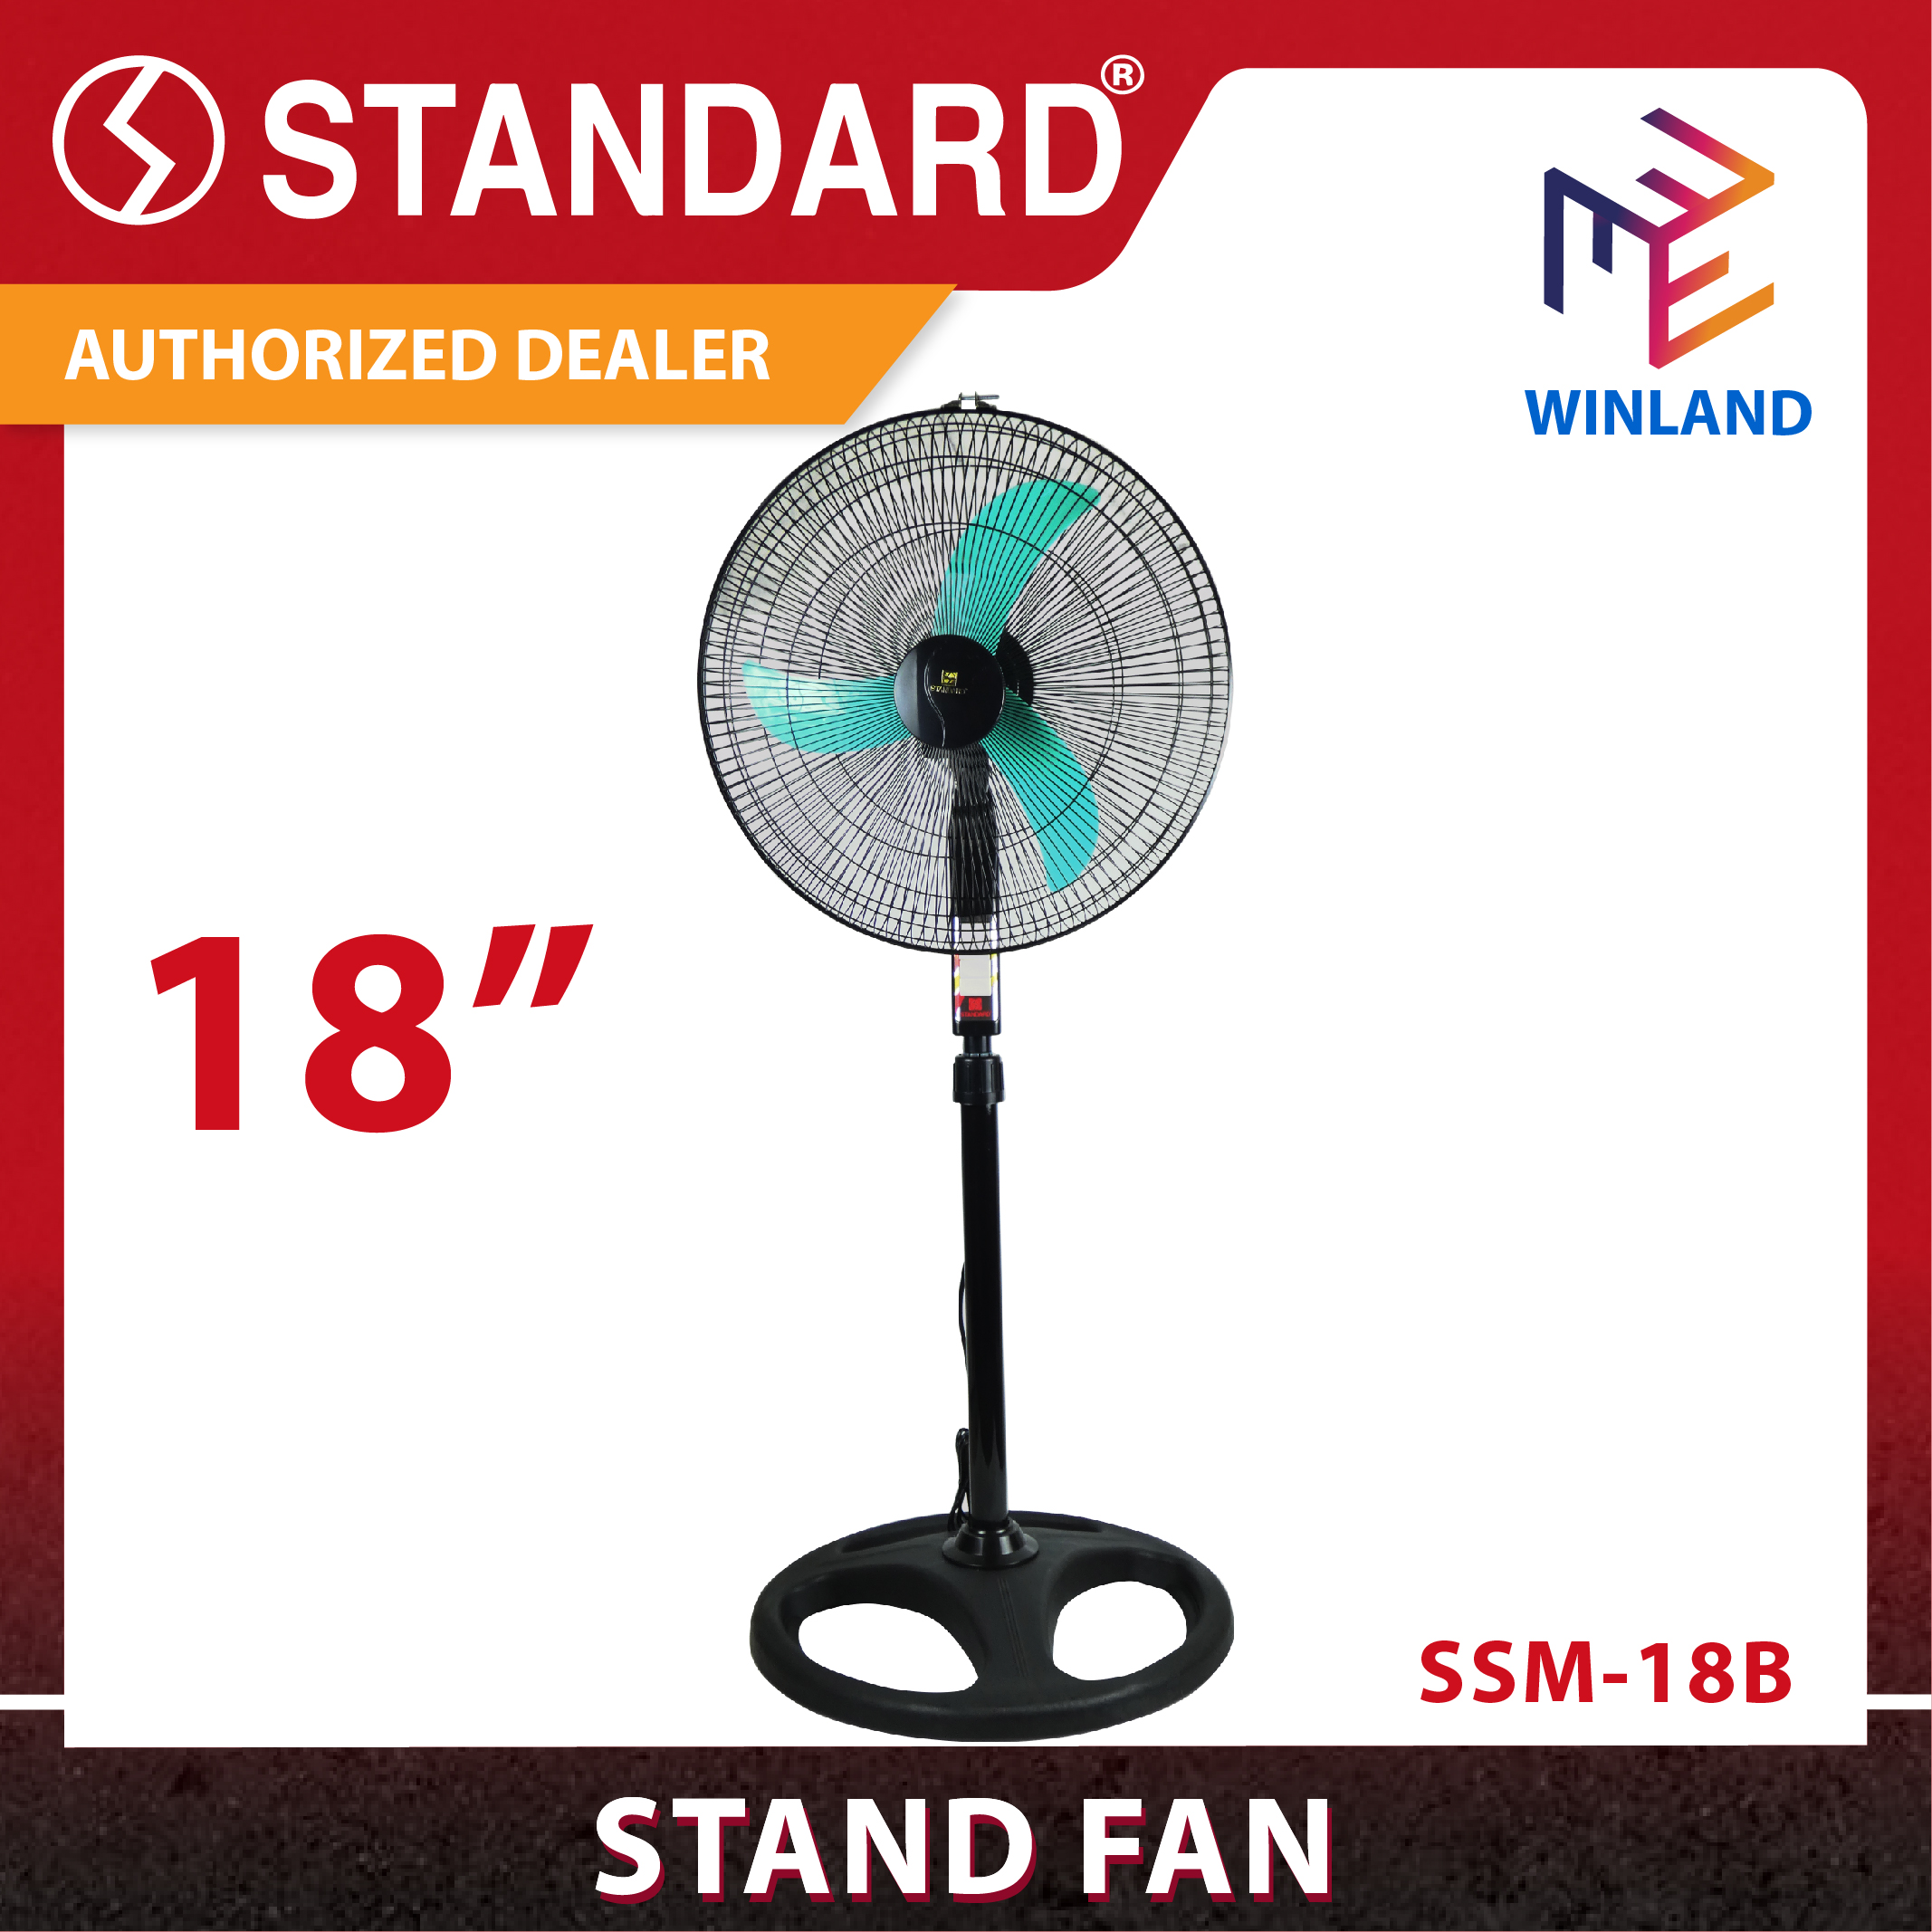 Winland 18" Stand Fan